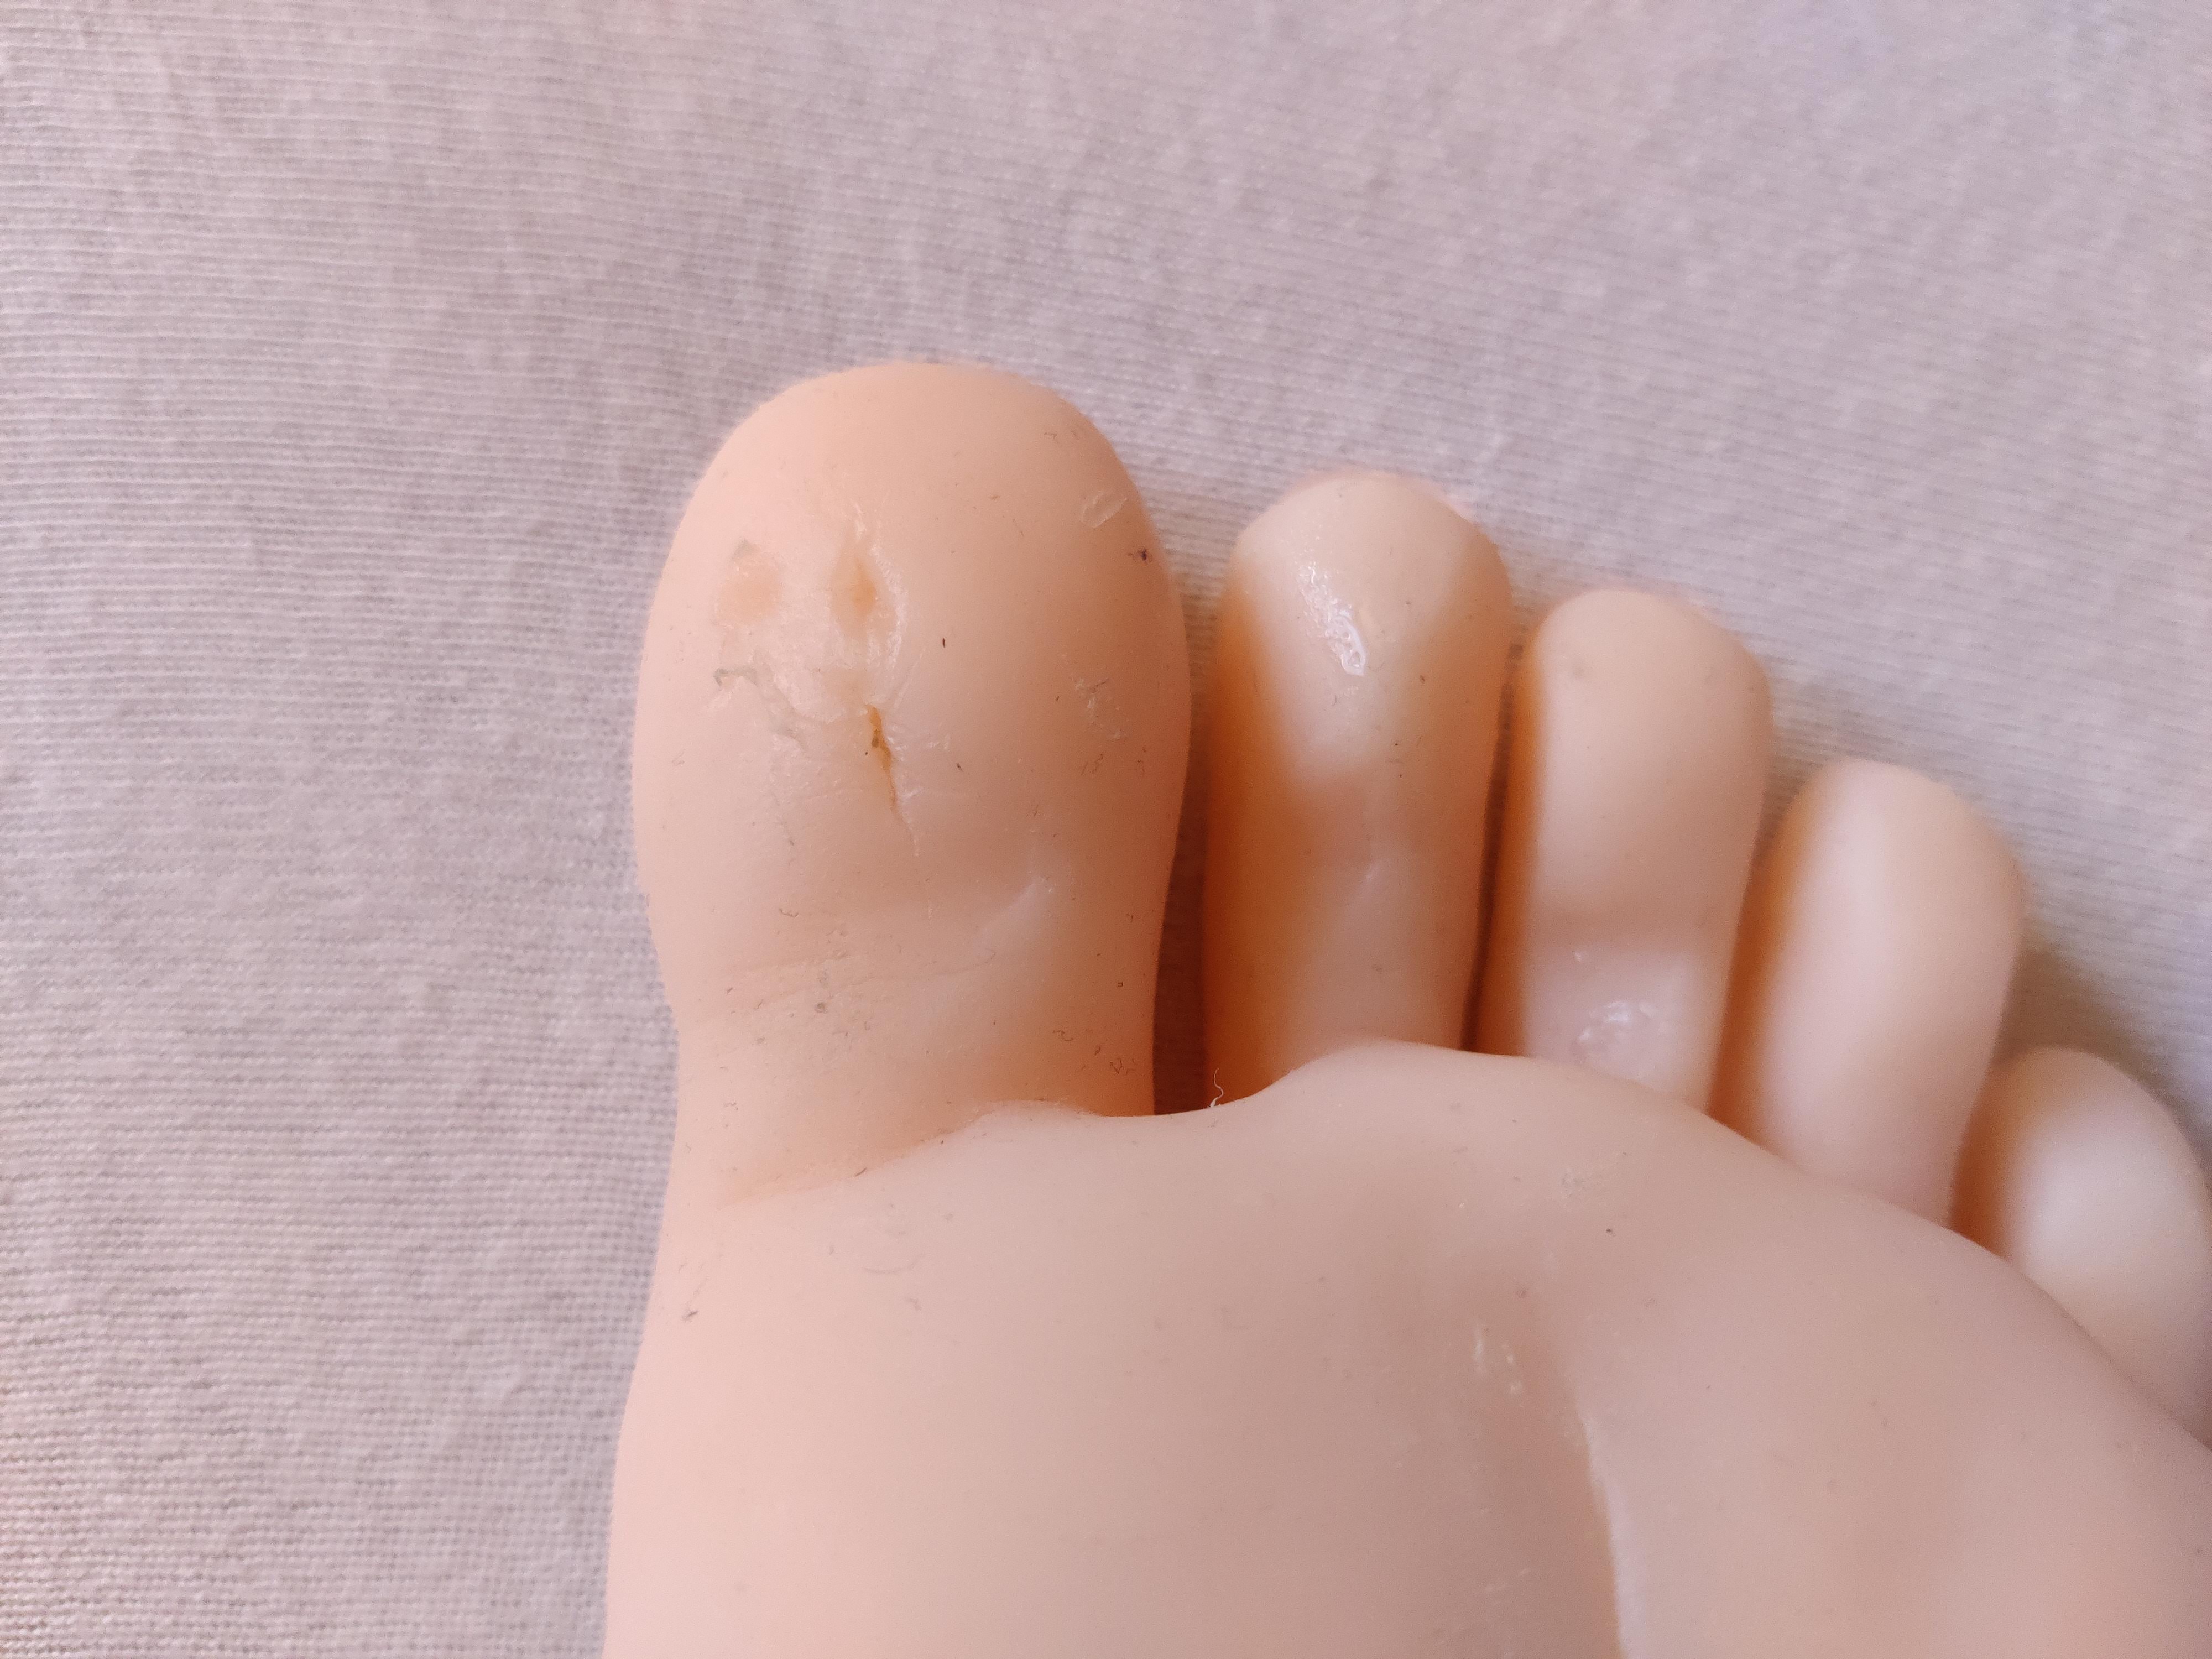 Damaged toe